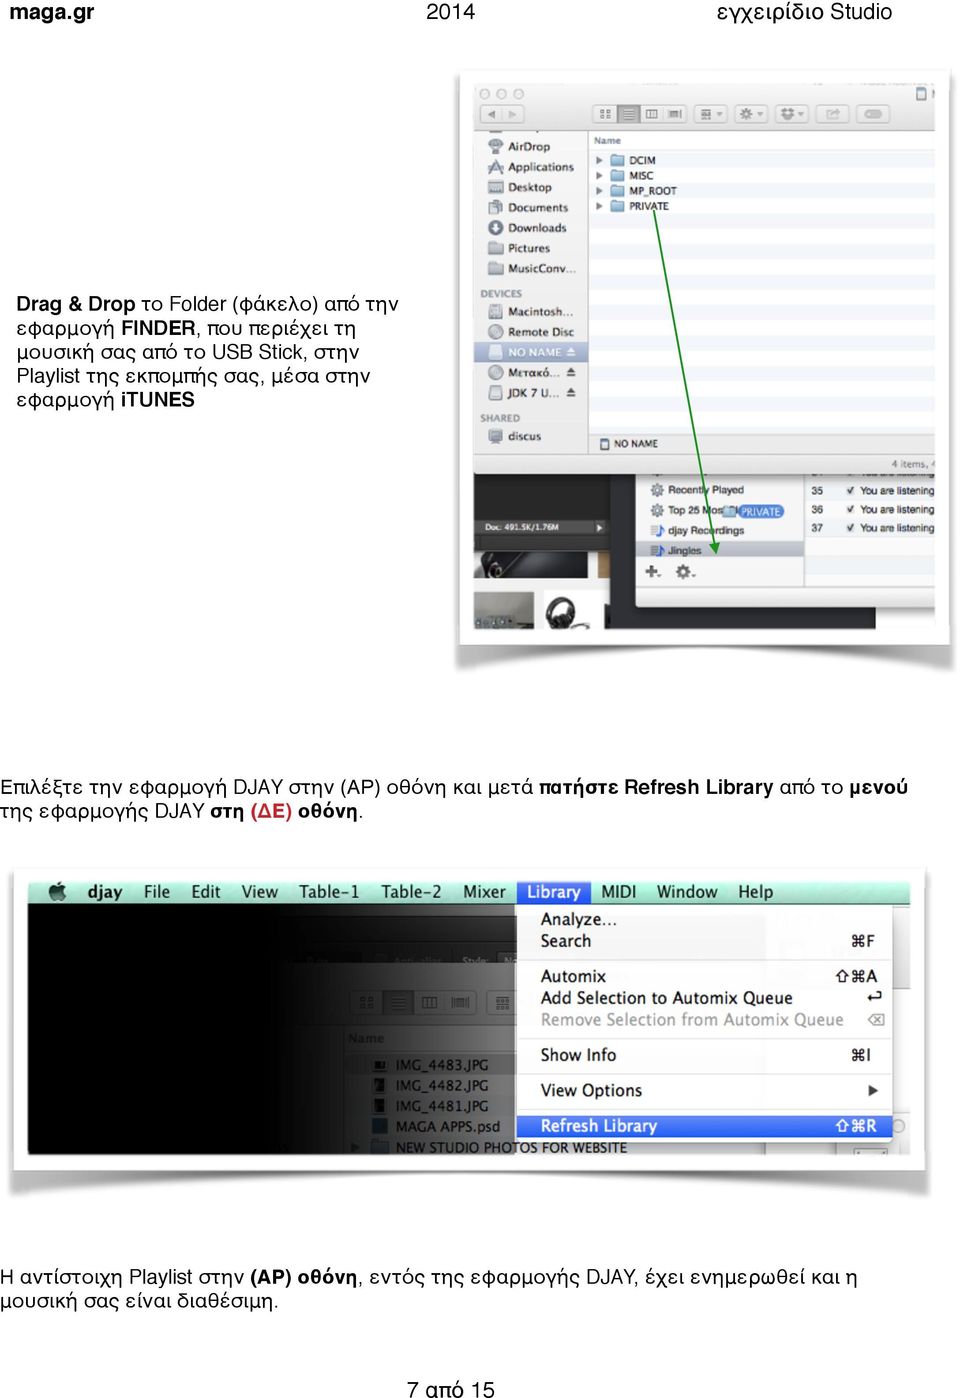 εφαρμογή DJAY στην (ΑΡ οθόνη και μετά πατήστε Refresh Library από το μενού της εφαρμογής DJAY στη (ΔΕ οθόνη.